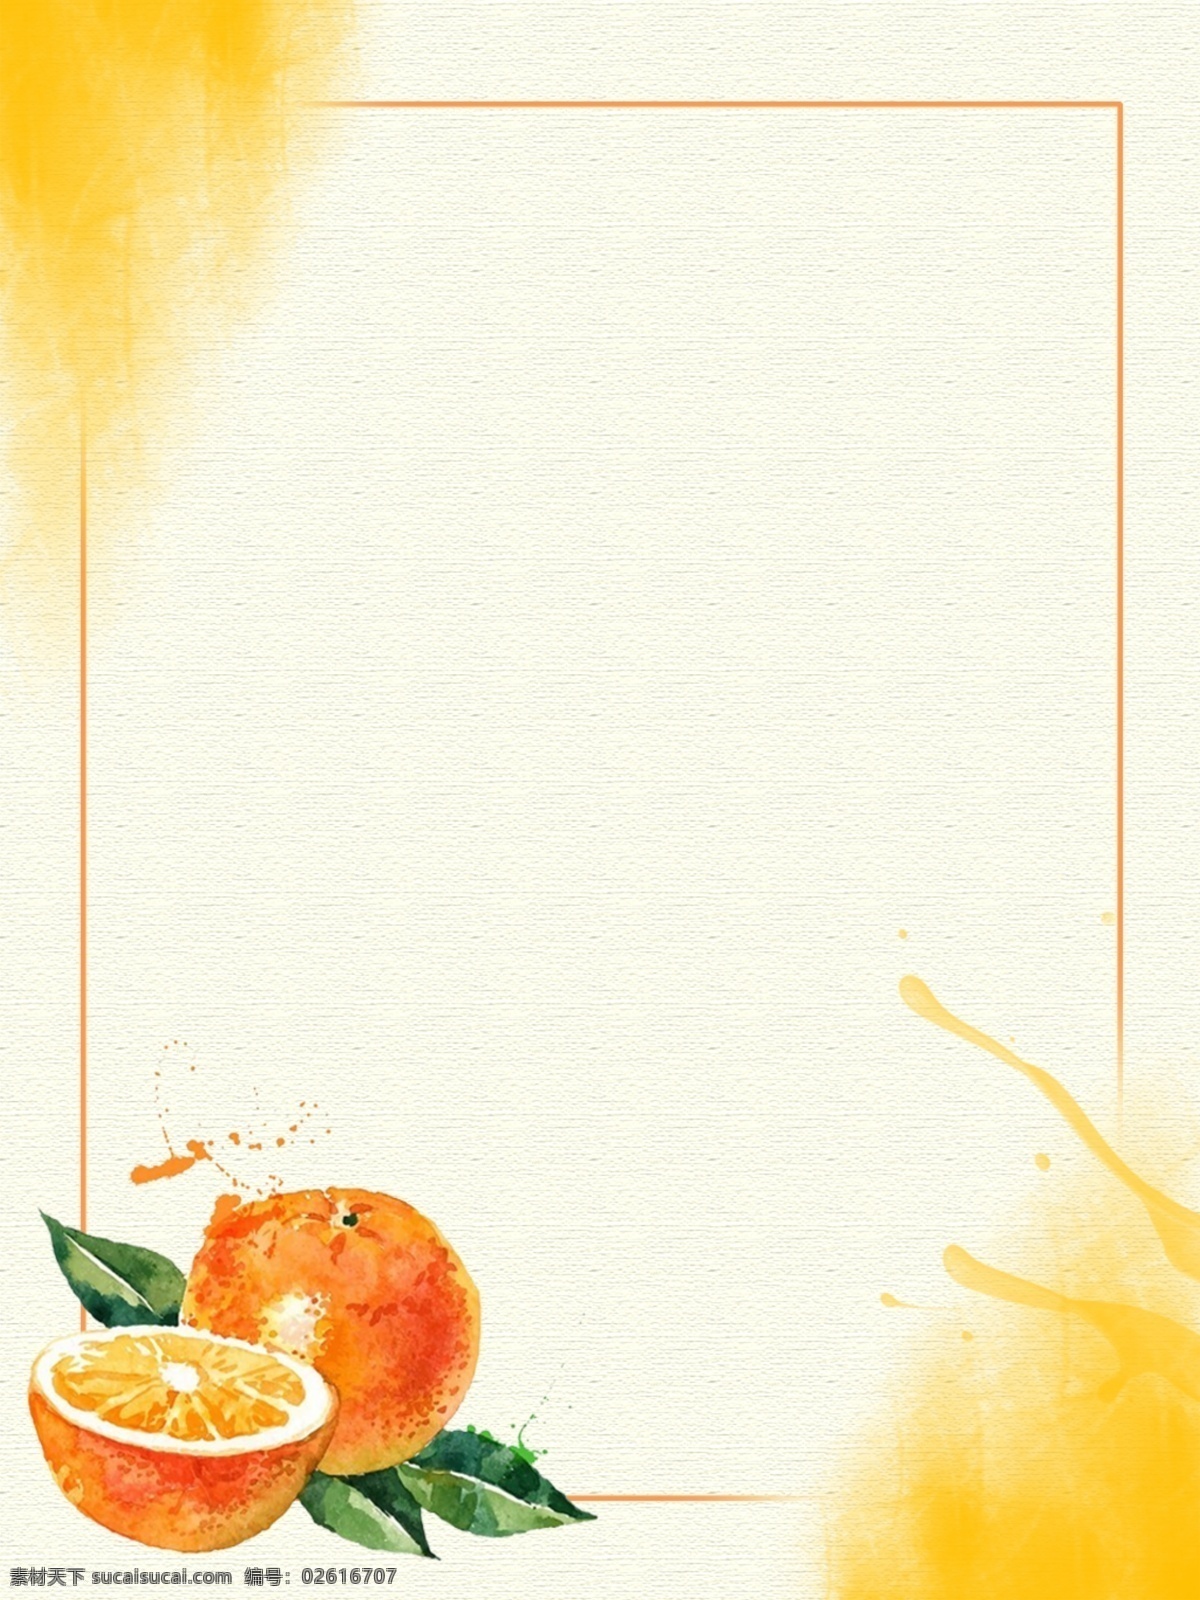 橙色 橘子 水果 海报 背景 桔子宣传单 水果宣传单 脐橙宣传单 橙子 桔子 脐橙 橙汁 果园 果农 农产品 椪柑 代理商 合作伙伴 新鲜 美味 绿色 分层